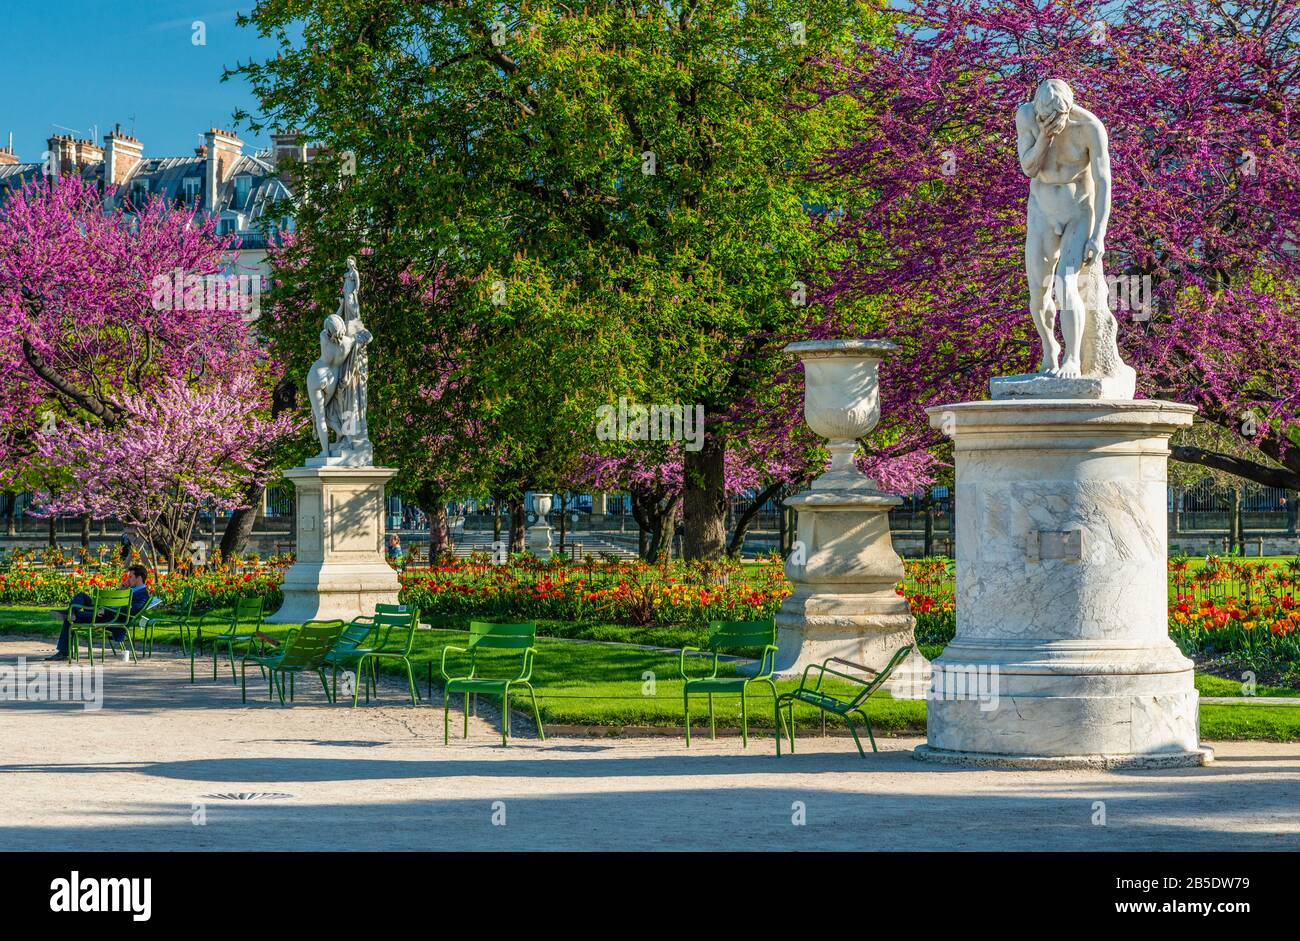 Blick auf die Tuilerien Park mit Blumen, Statuen, Brunnen, und Kirschblüten im April - Frühling in Paris, Frankreich. Stockfoto